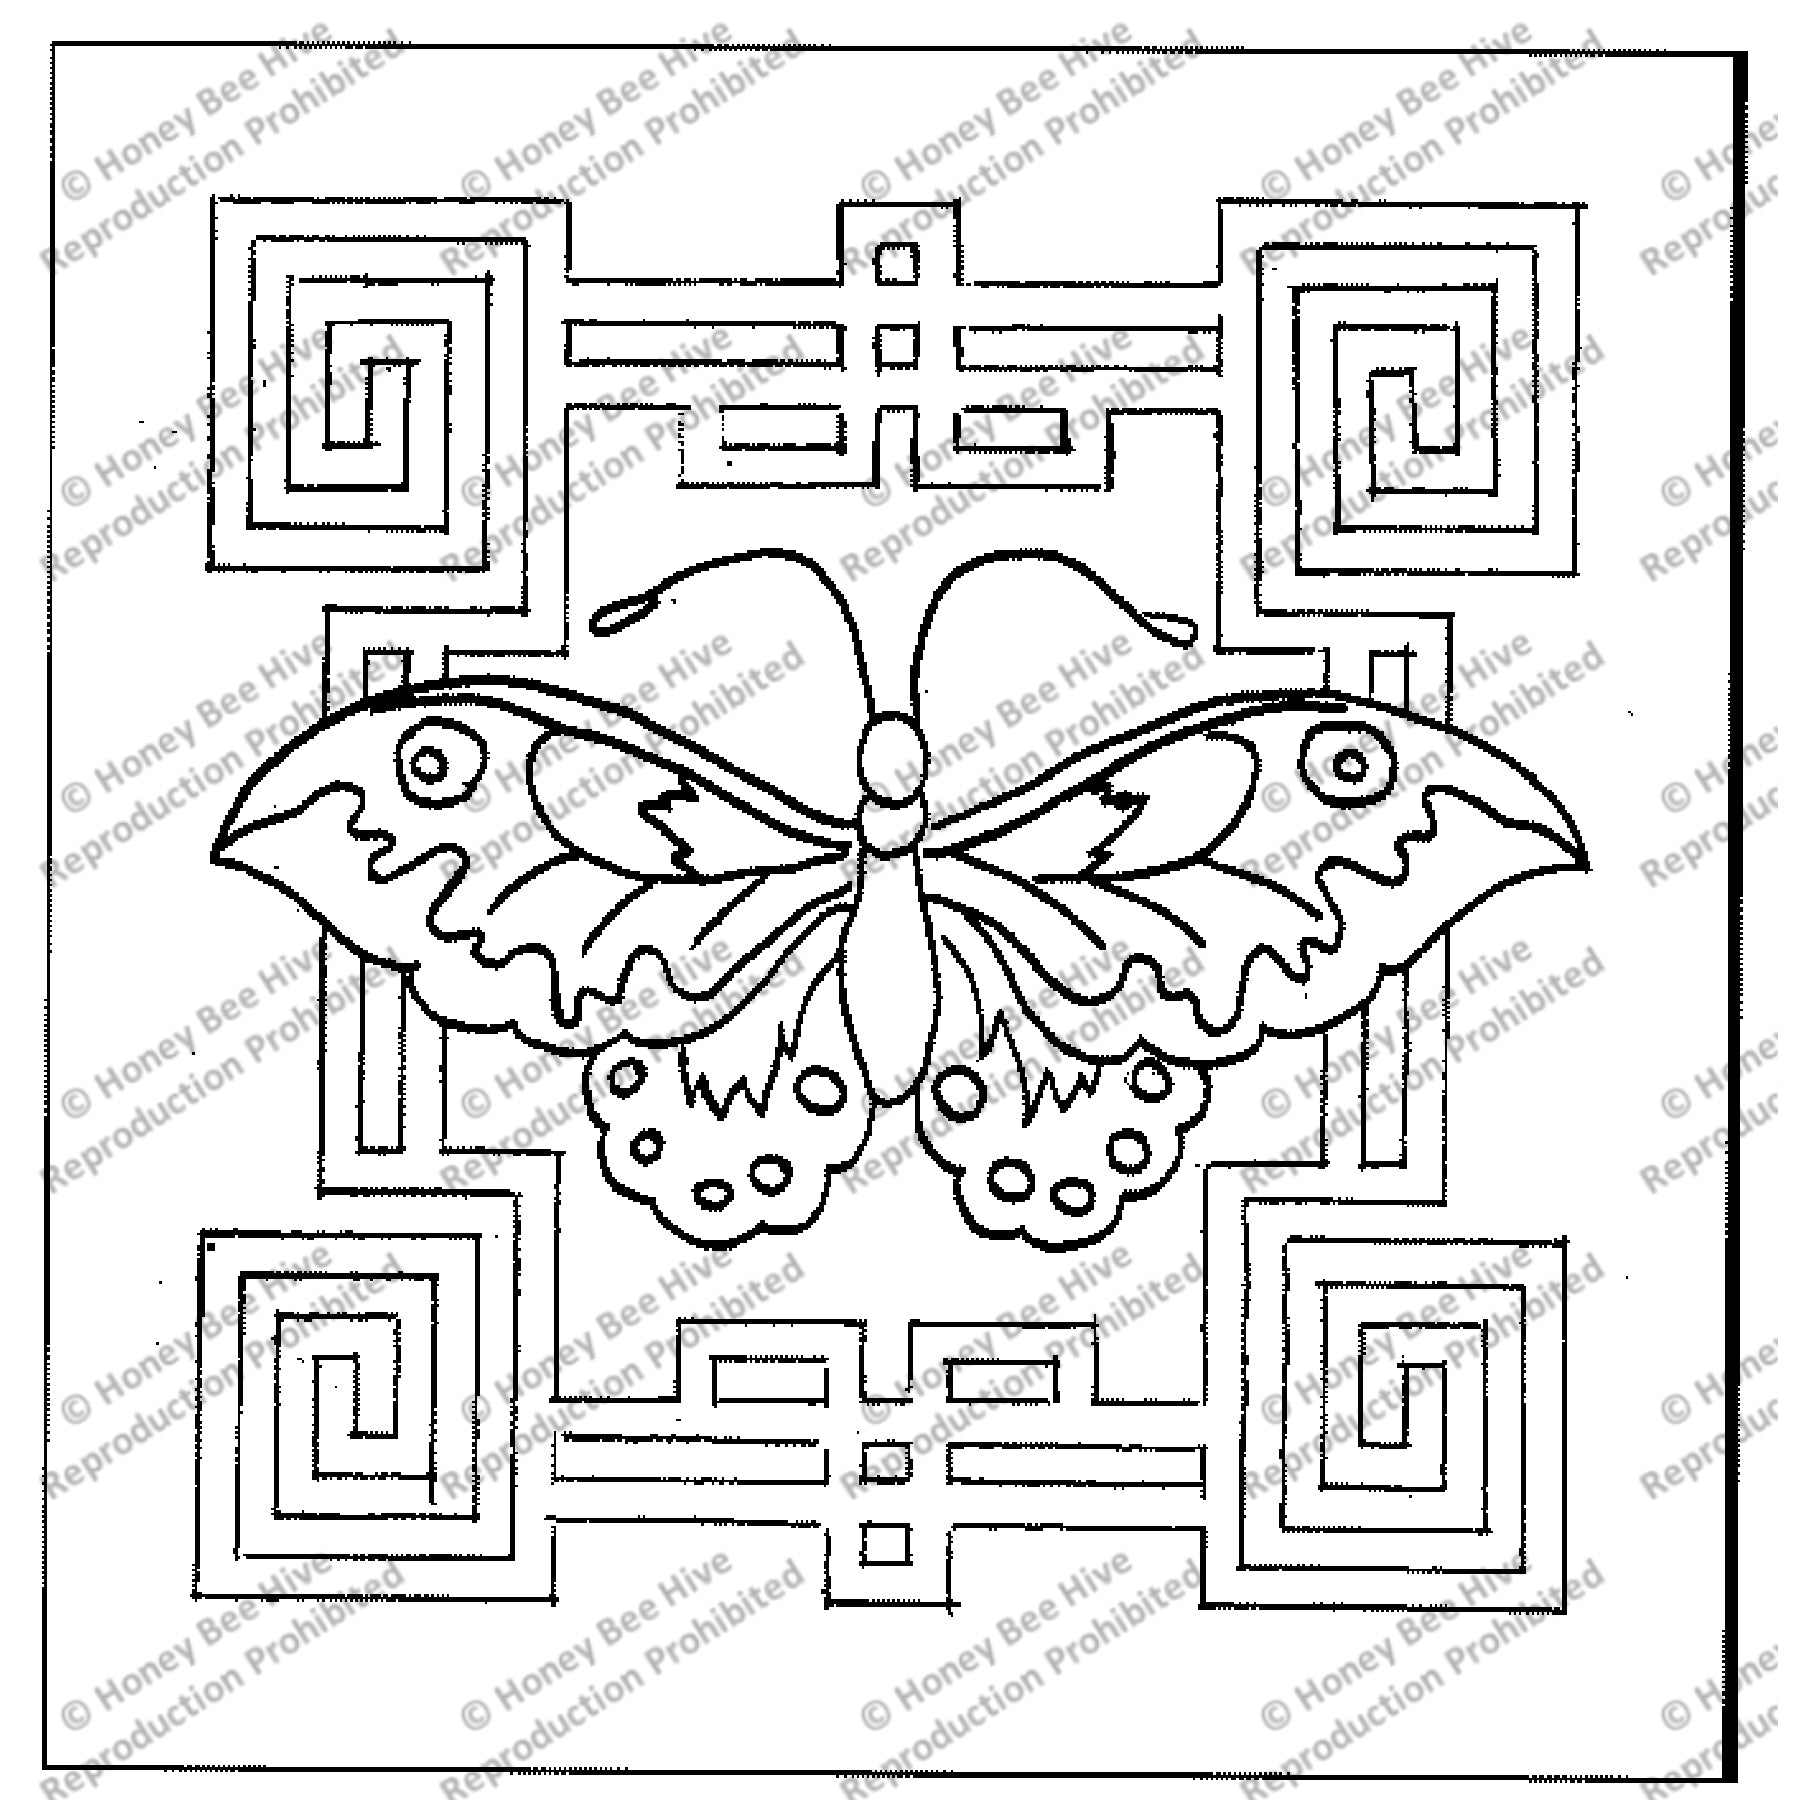 Kossu, rug hooking pattern